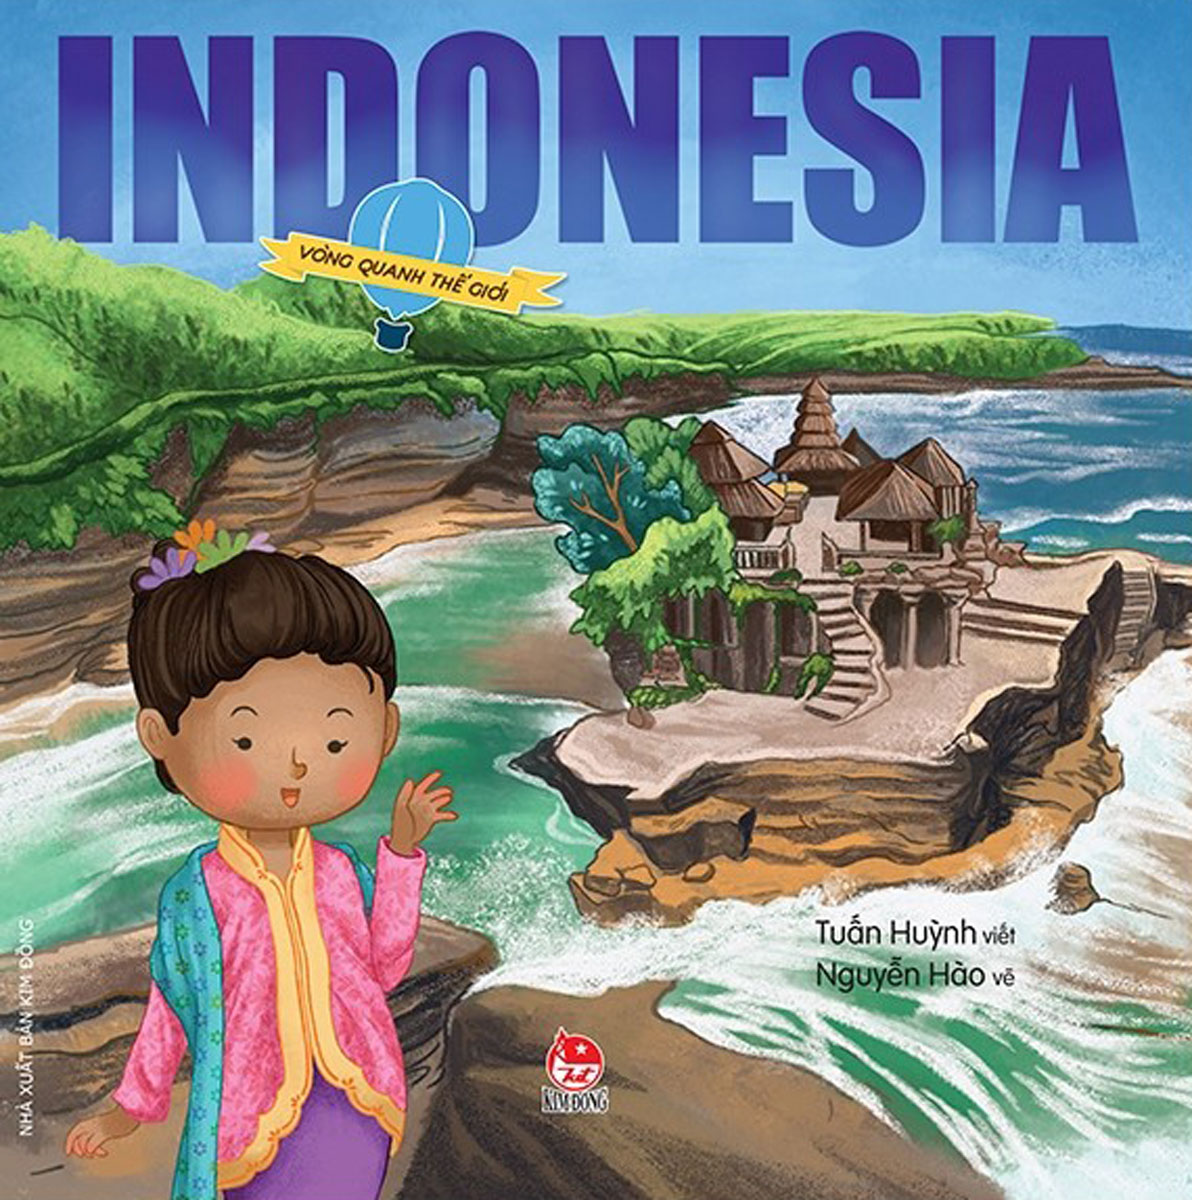 Vòng Quanh Thế Giới - Indonesia